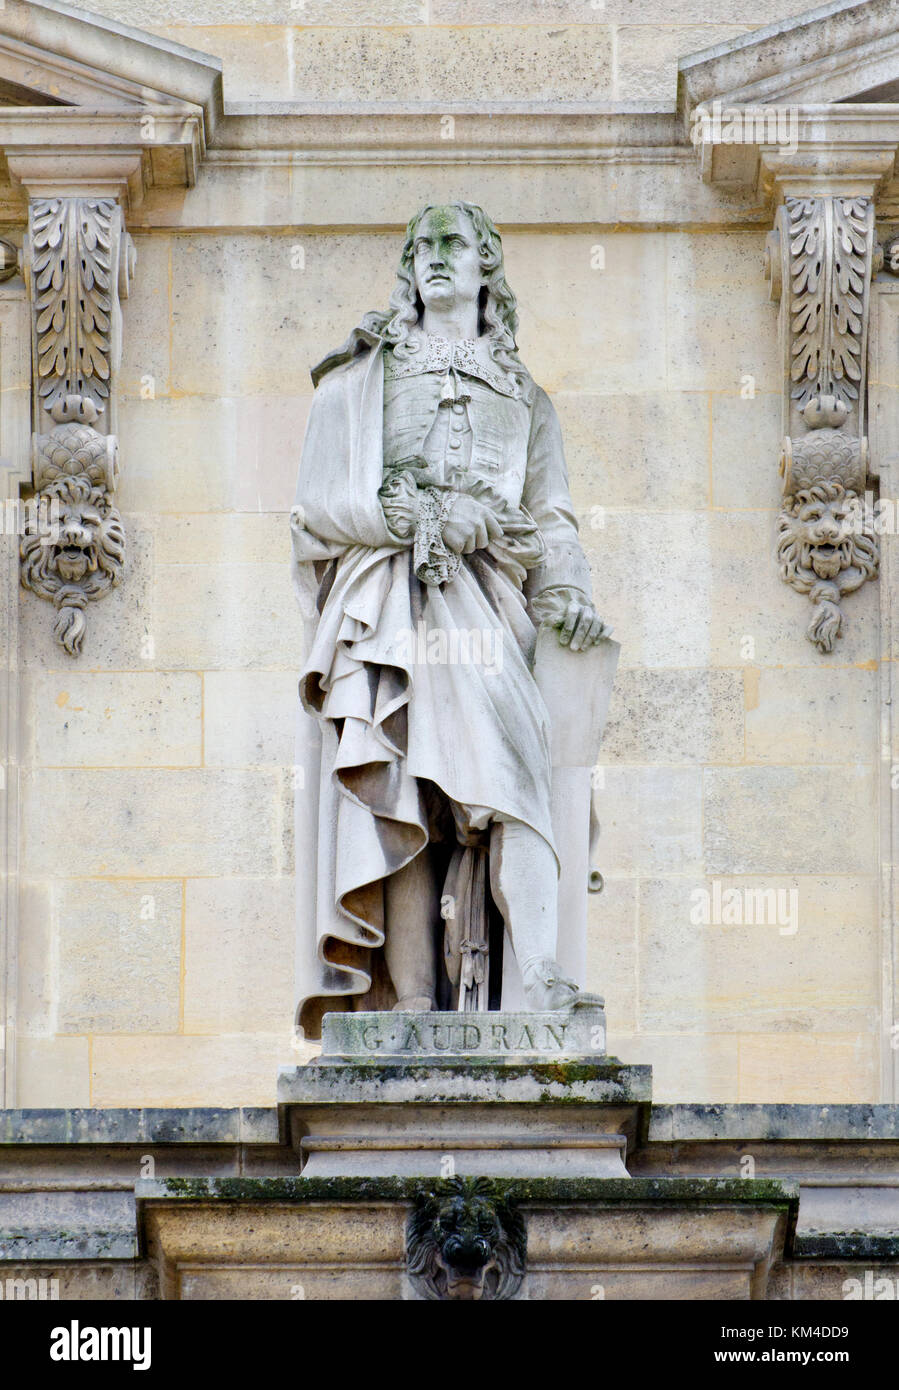 Paris, France. Palais du Louvre. Statue dans la cour Napoléon : Gérard Audran (1640 - 1703), graveur français, troisième fils de Claude Audran. Banque D'Images